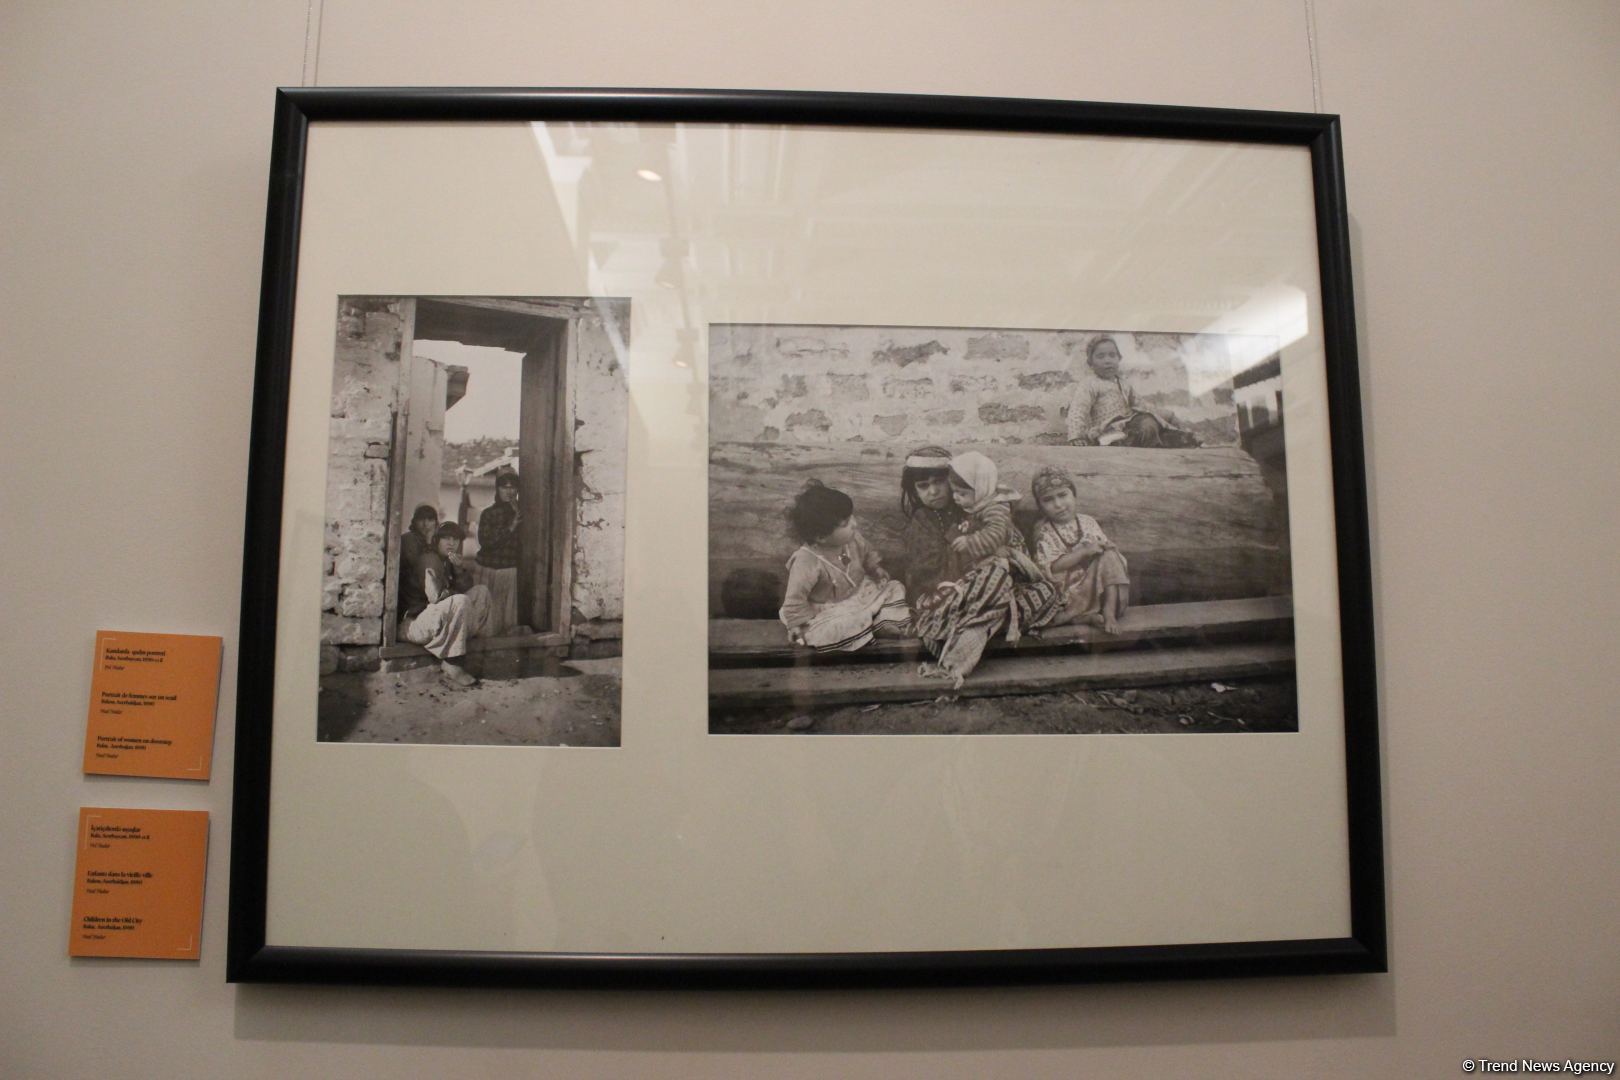 Впервые в Азербайджане - выставка работ известного французского фотографа Поля Надара (ФОТО)